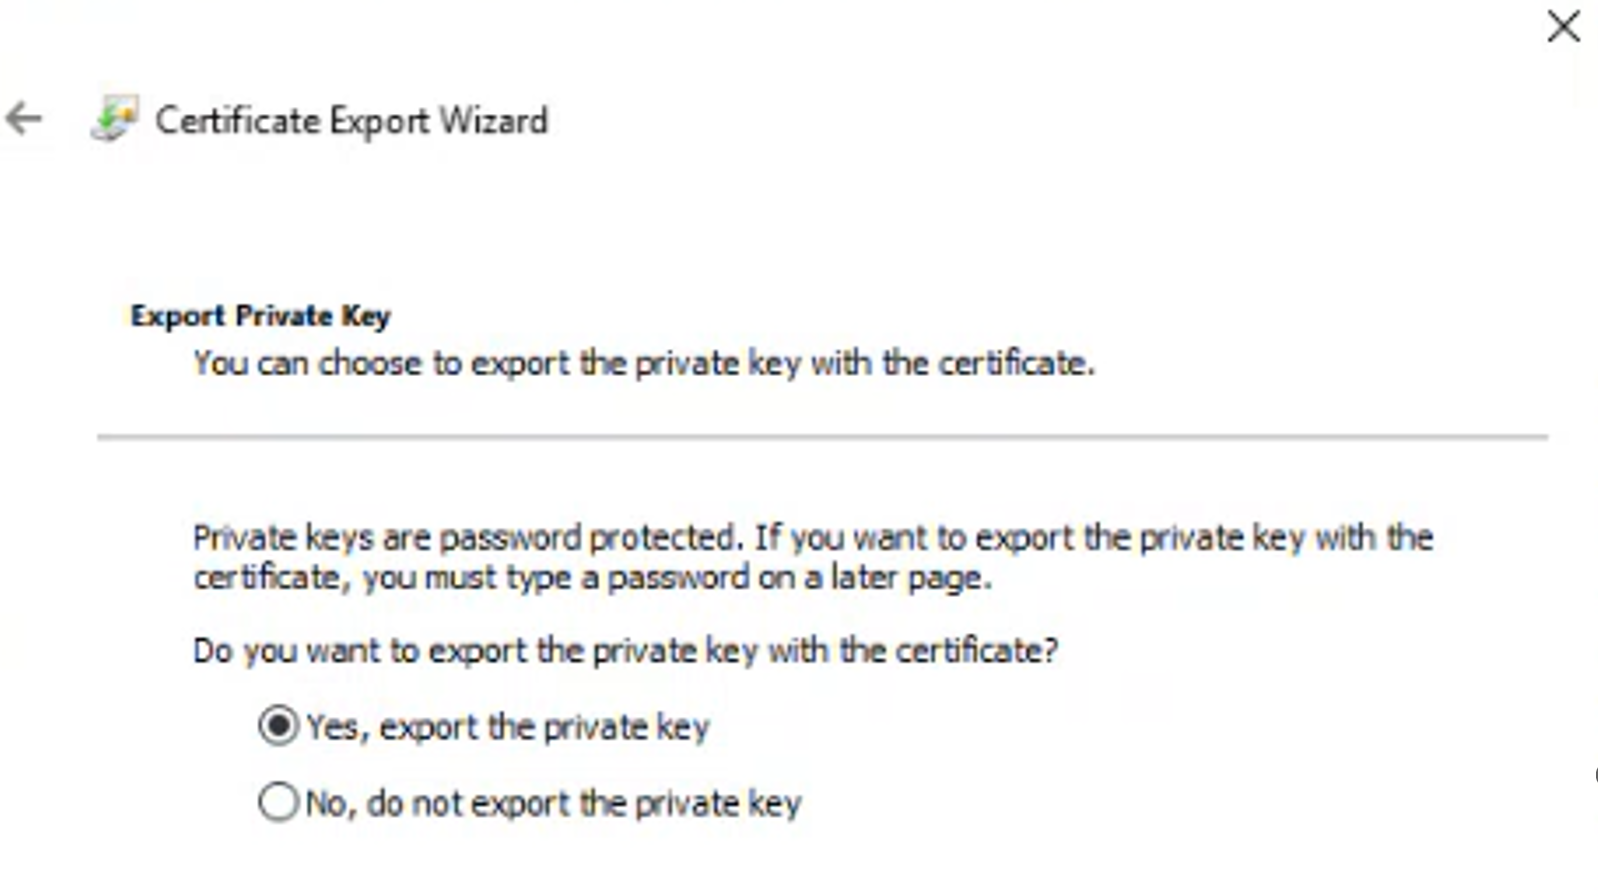 AAD_-_Certificate_requirements_export_wizard_1.png